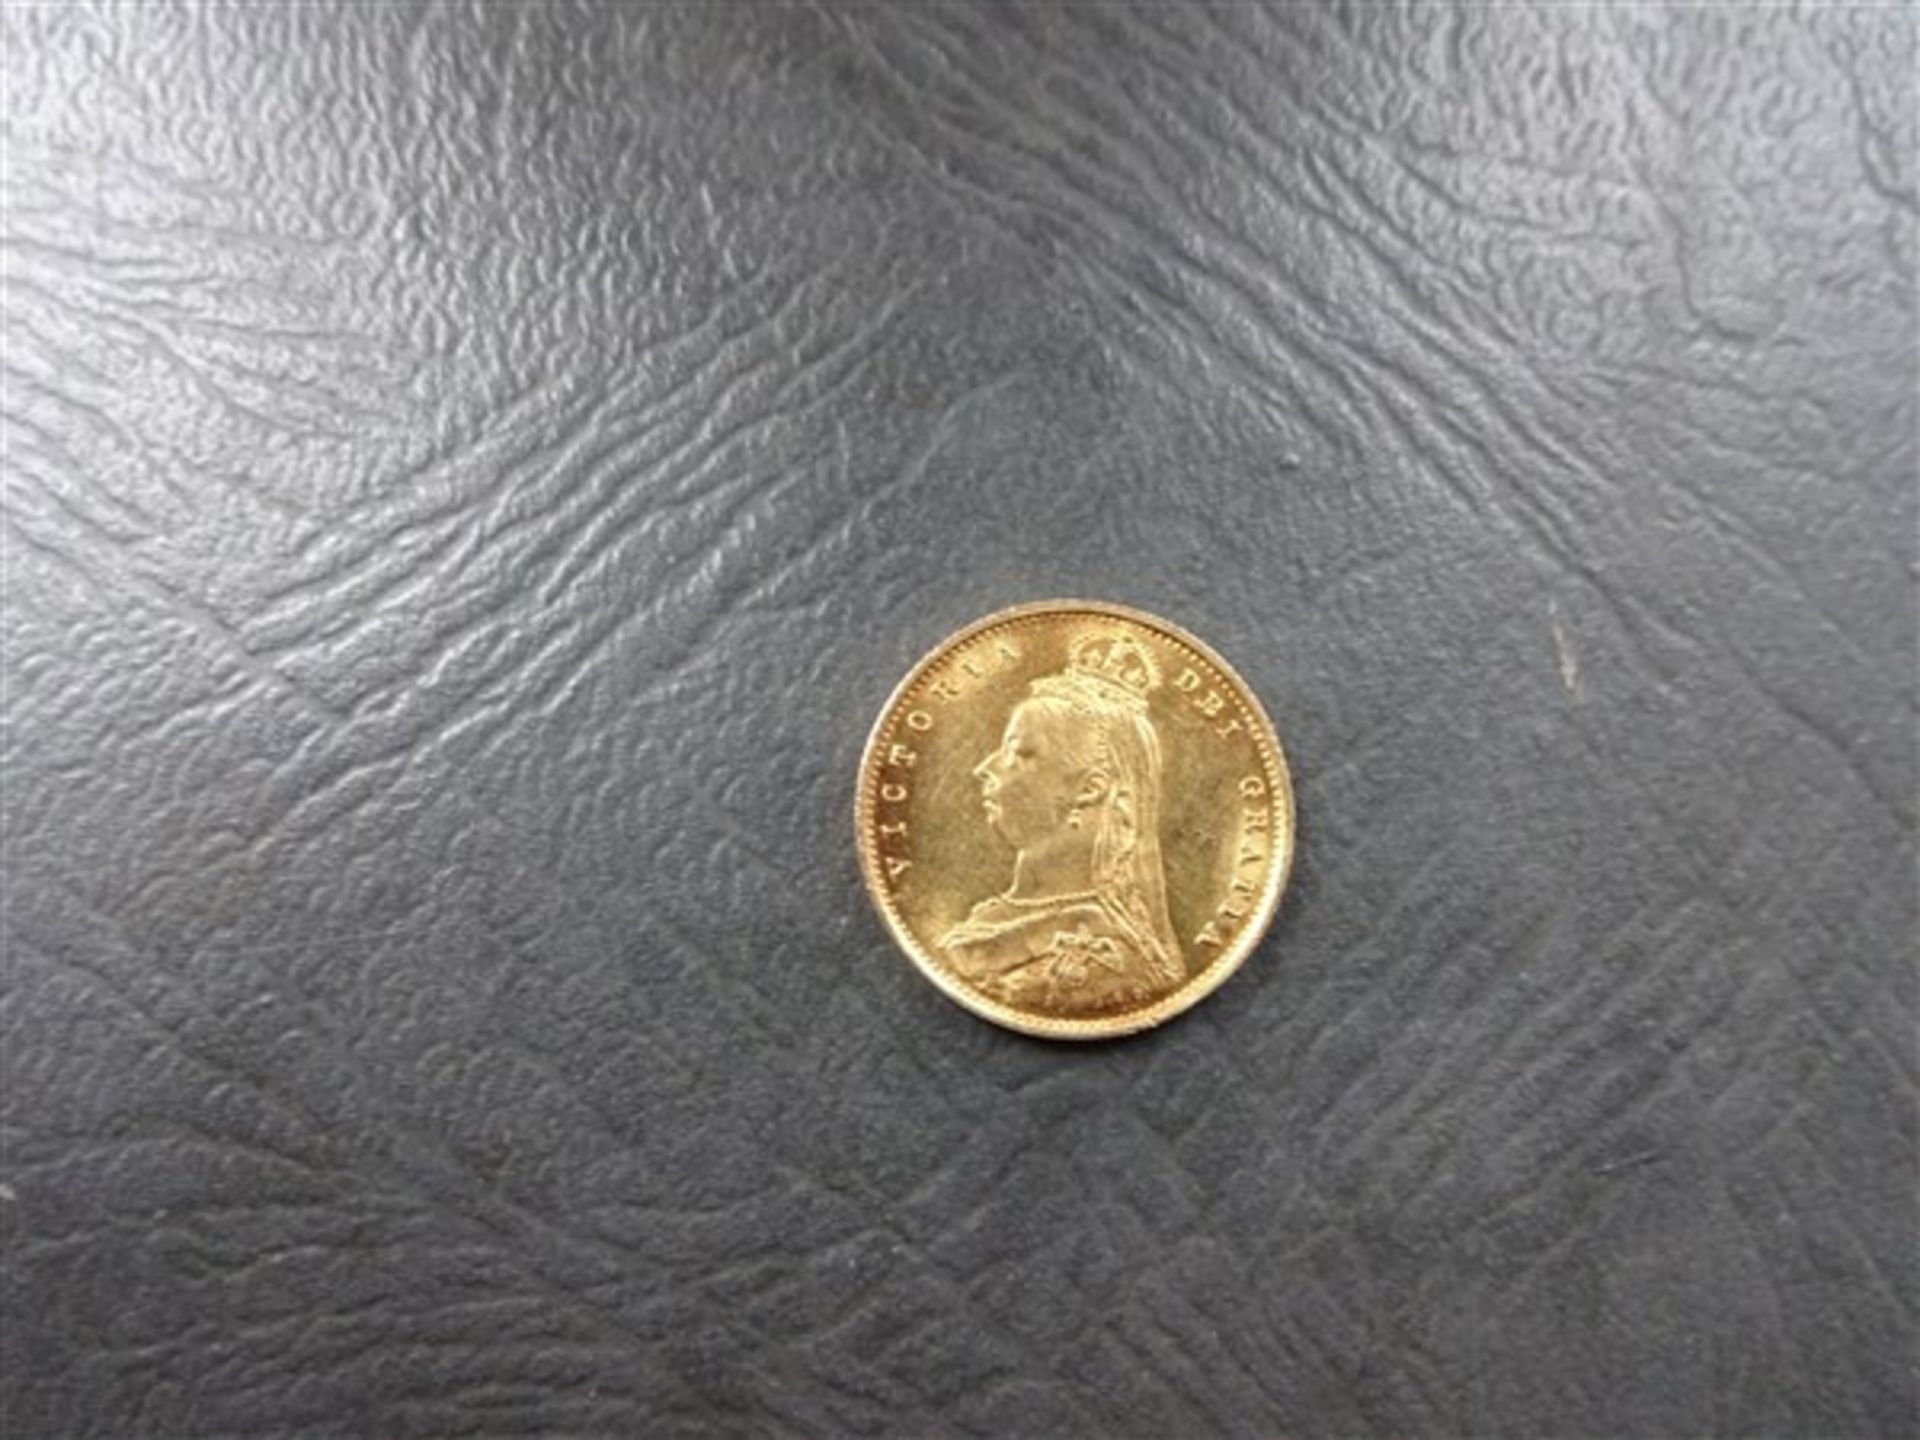 Rare 1887 Gold Half Sovereign Coin